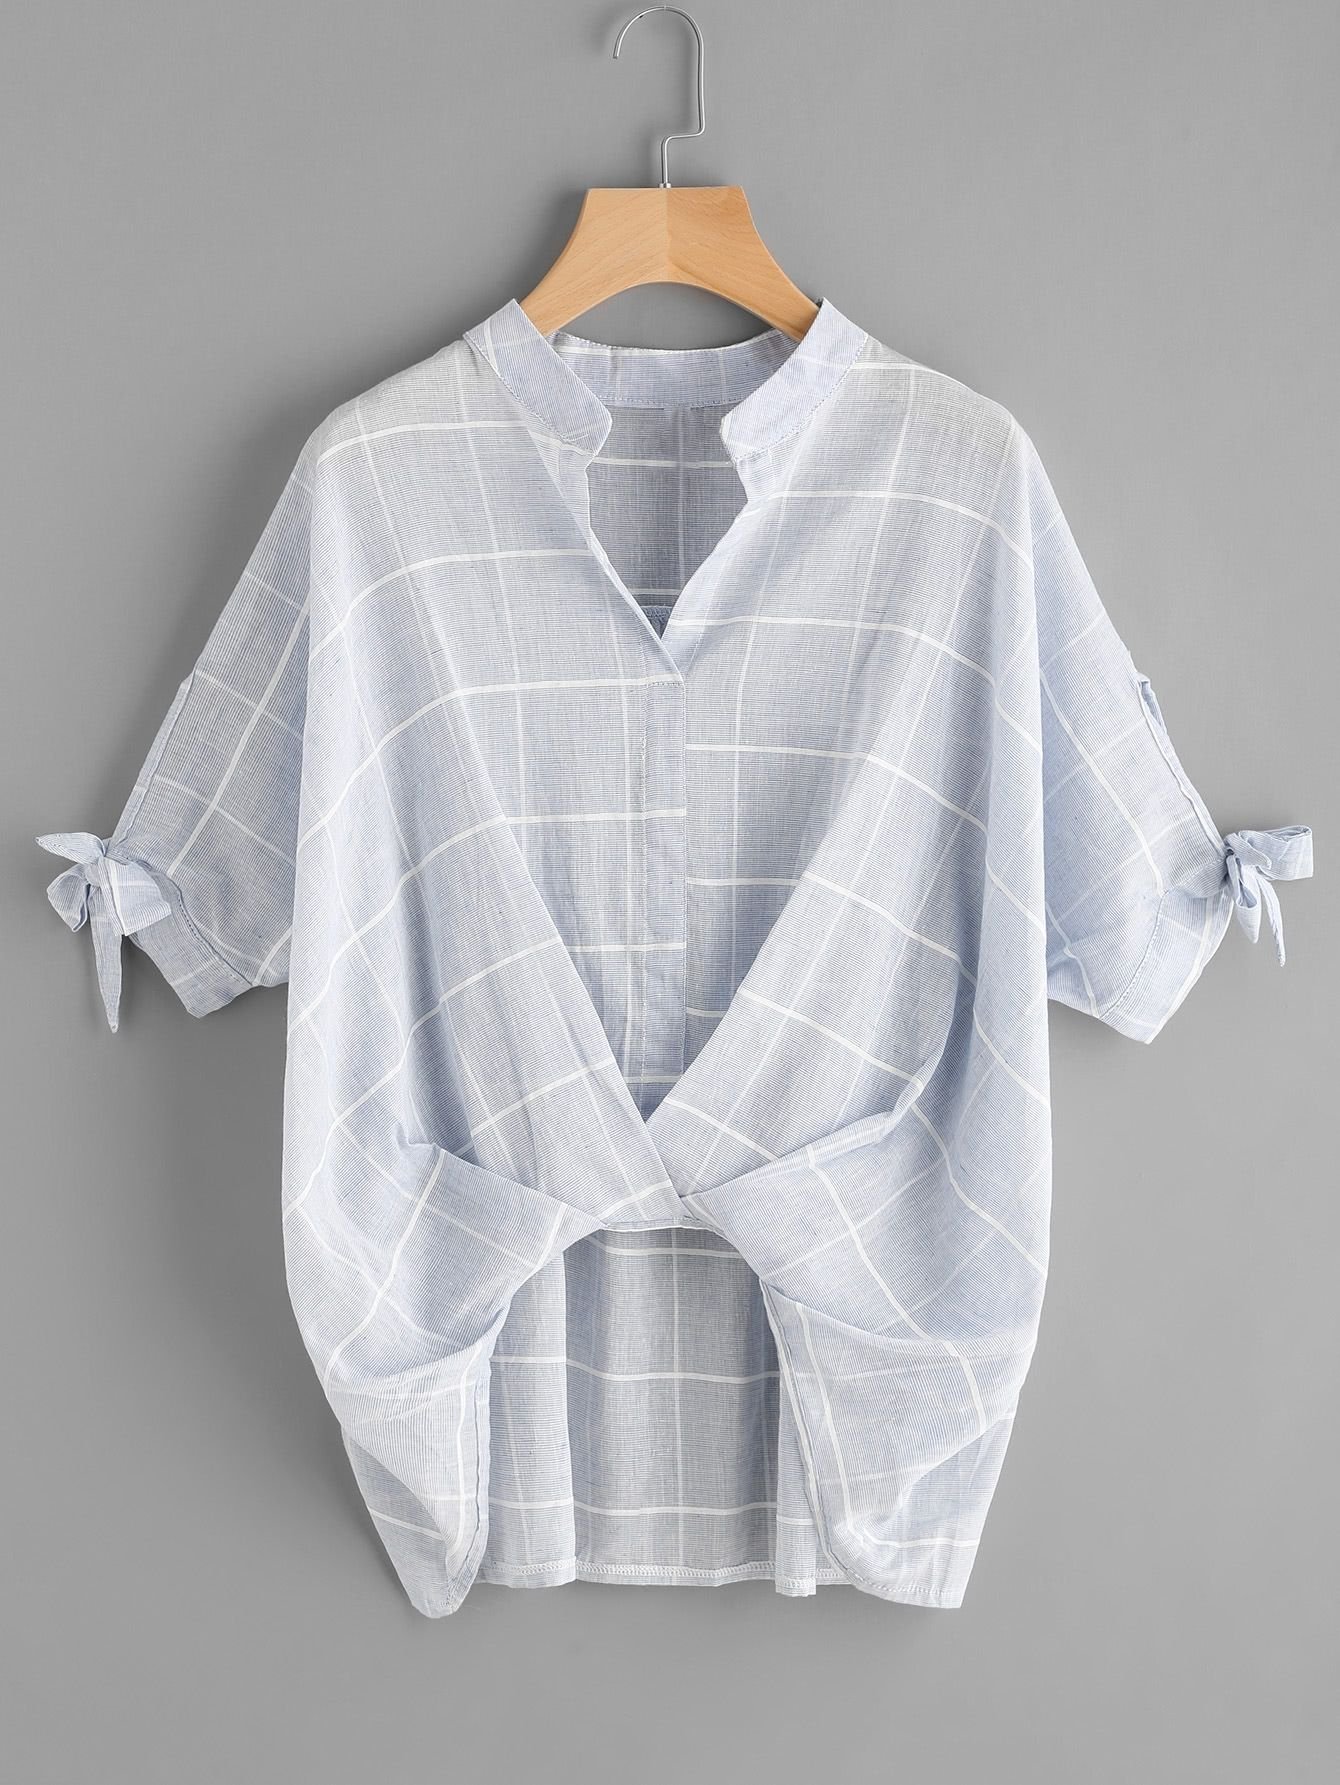 Блузка из 1 метра ткани. Переделка рубашки. Переделка мужской рубашки. Блузка из рубашки. Блуза из мужской рубашки.